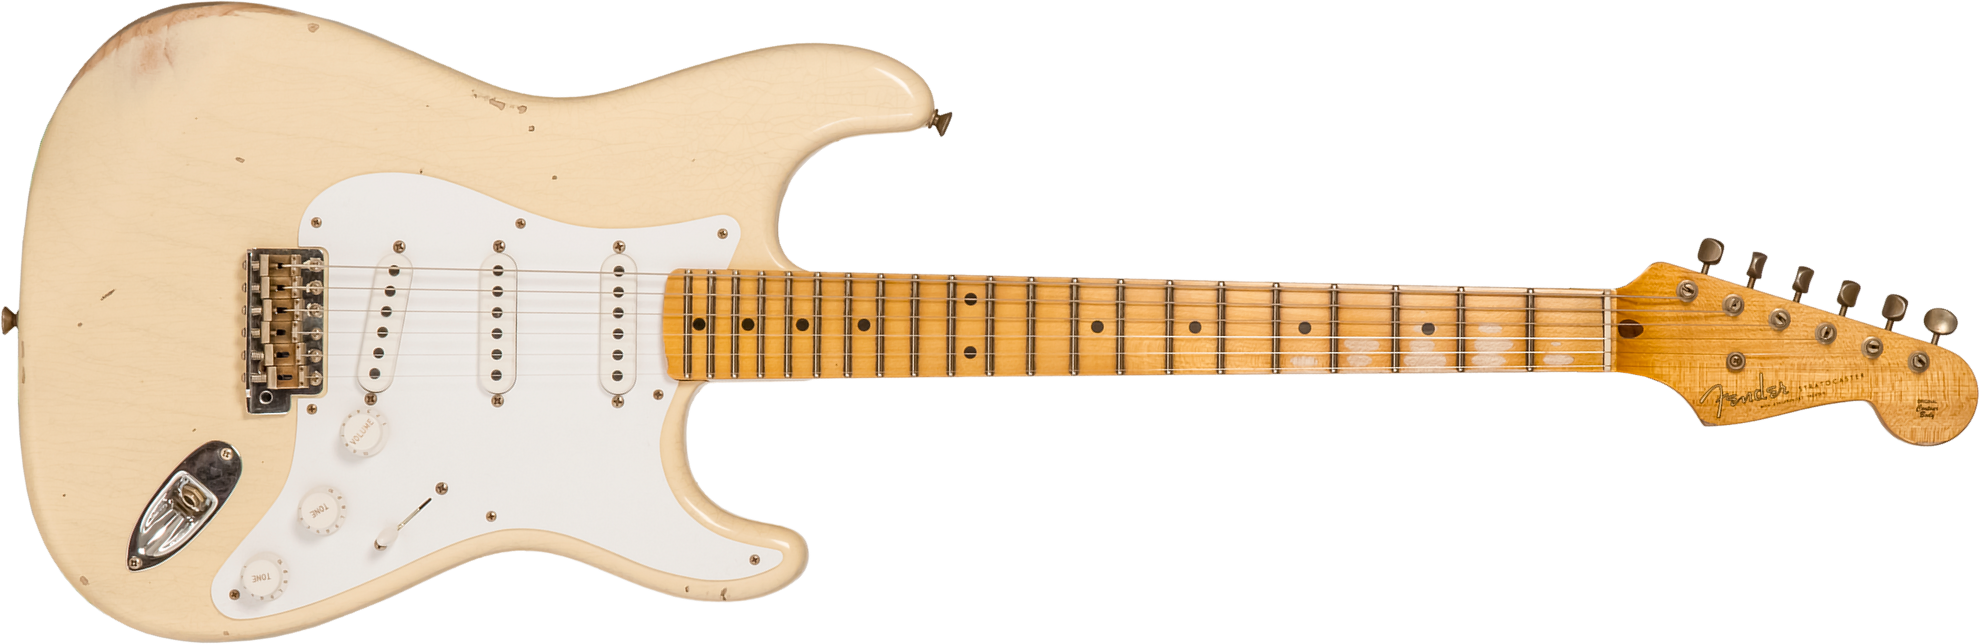 Fender Custom Shop Strat 1954 70th Anniv. 3s Trem Mn #xn4382 - Relic Vintage Blonde - Elektrische gitaar in Str-vorm - Main picture